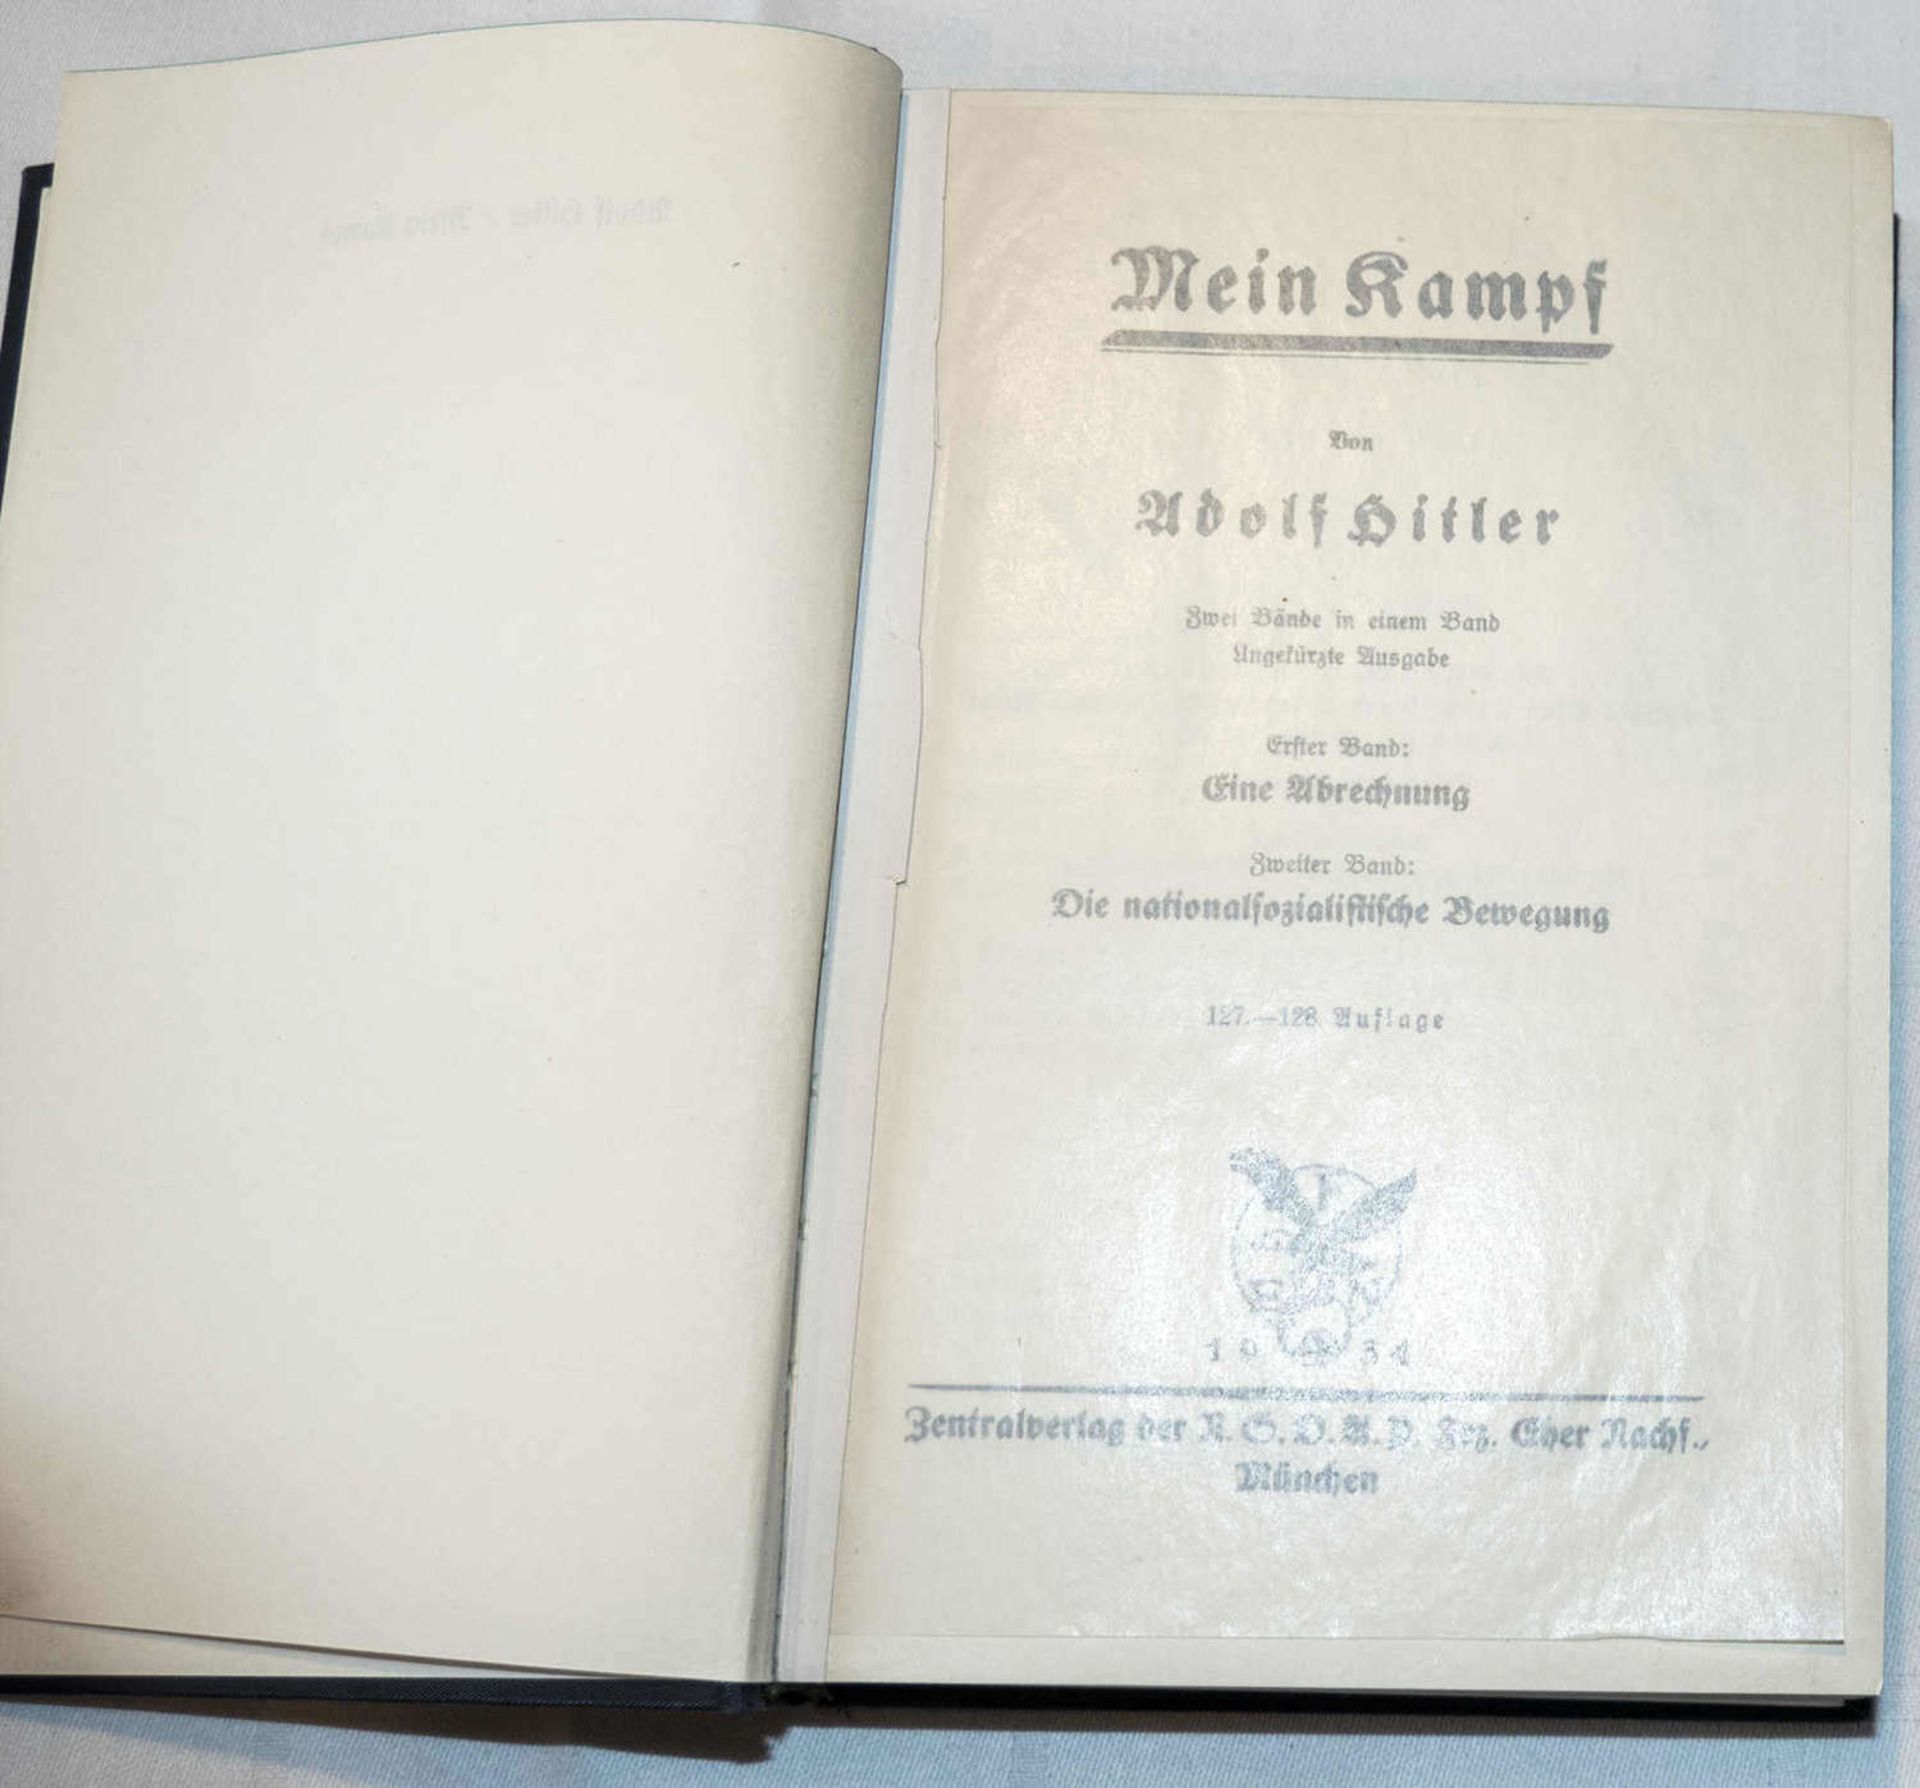 "Mein Kampf", blaue Gesamtausgabe, Band 1 + 2 von 1934. 1. Seite fehlt."Mein Kampf", blue complete - Bild 3 aus 3